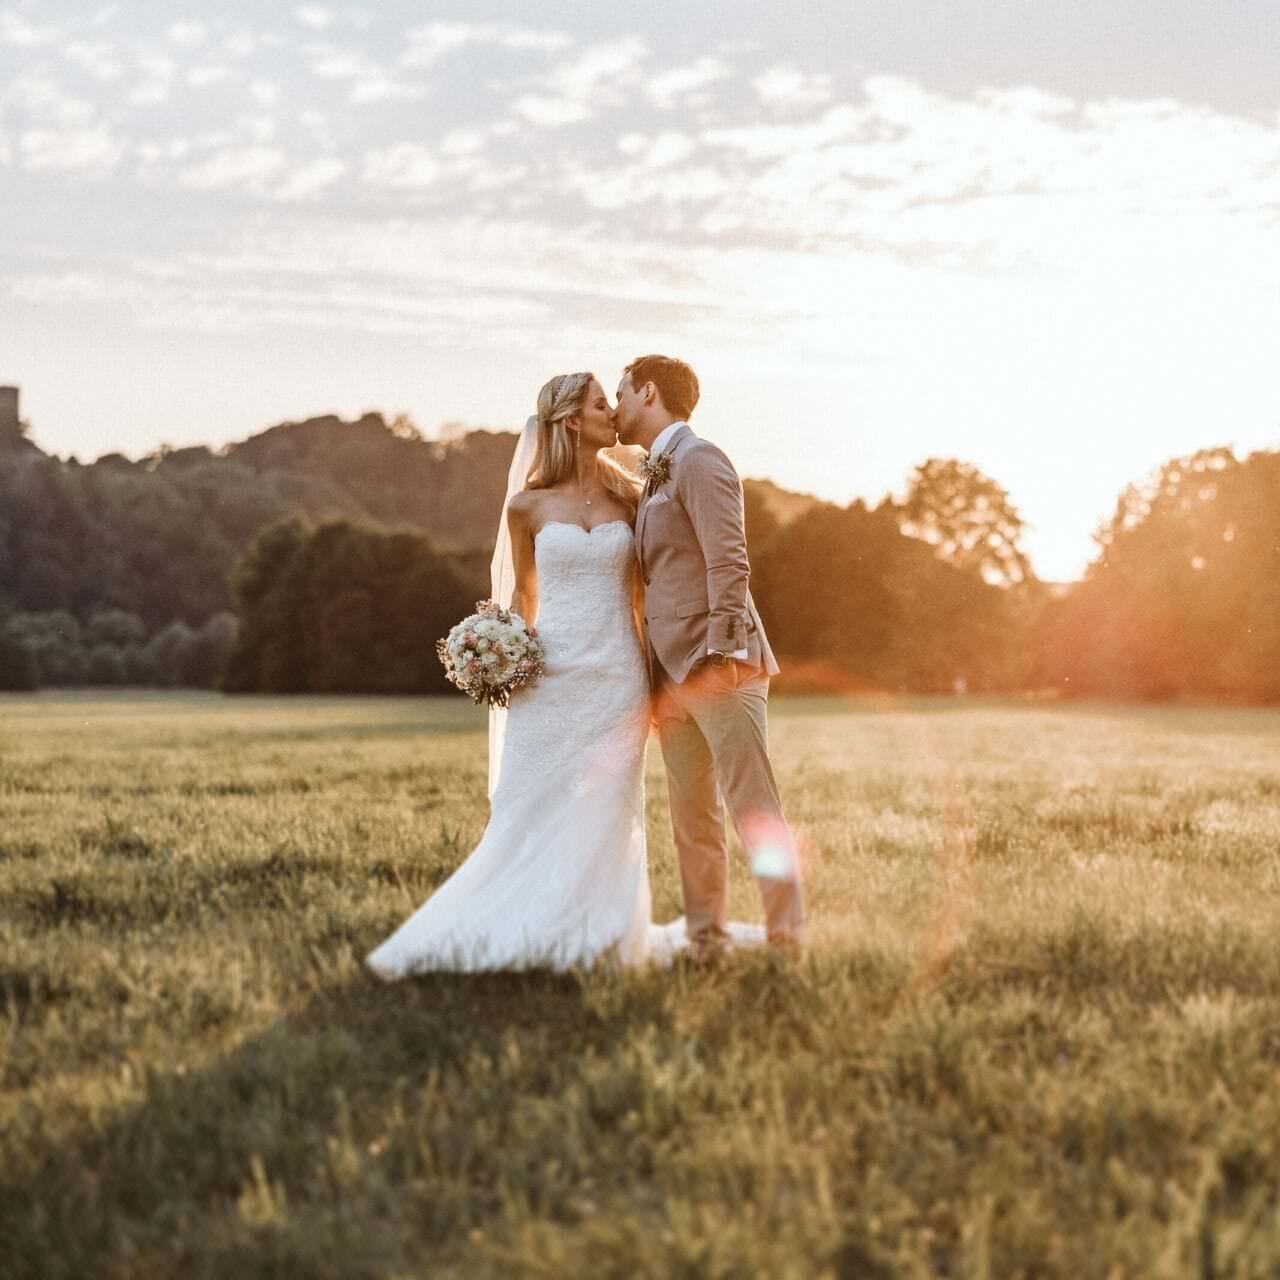 Hochzeitsfotograf Dinslaken Hochzeit Heiraten Hochzeitsfotos - Hochzeitspaar küsst sich auf einer Wiese bei Sonnenuntergang. Bräutigam hat seine linke Hand in der Hosentasche. Die Braut hält ihren Blumenstrauß in der rechten Hand fest. Im Hintergrund ist Wald zu erkennen